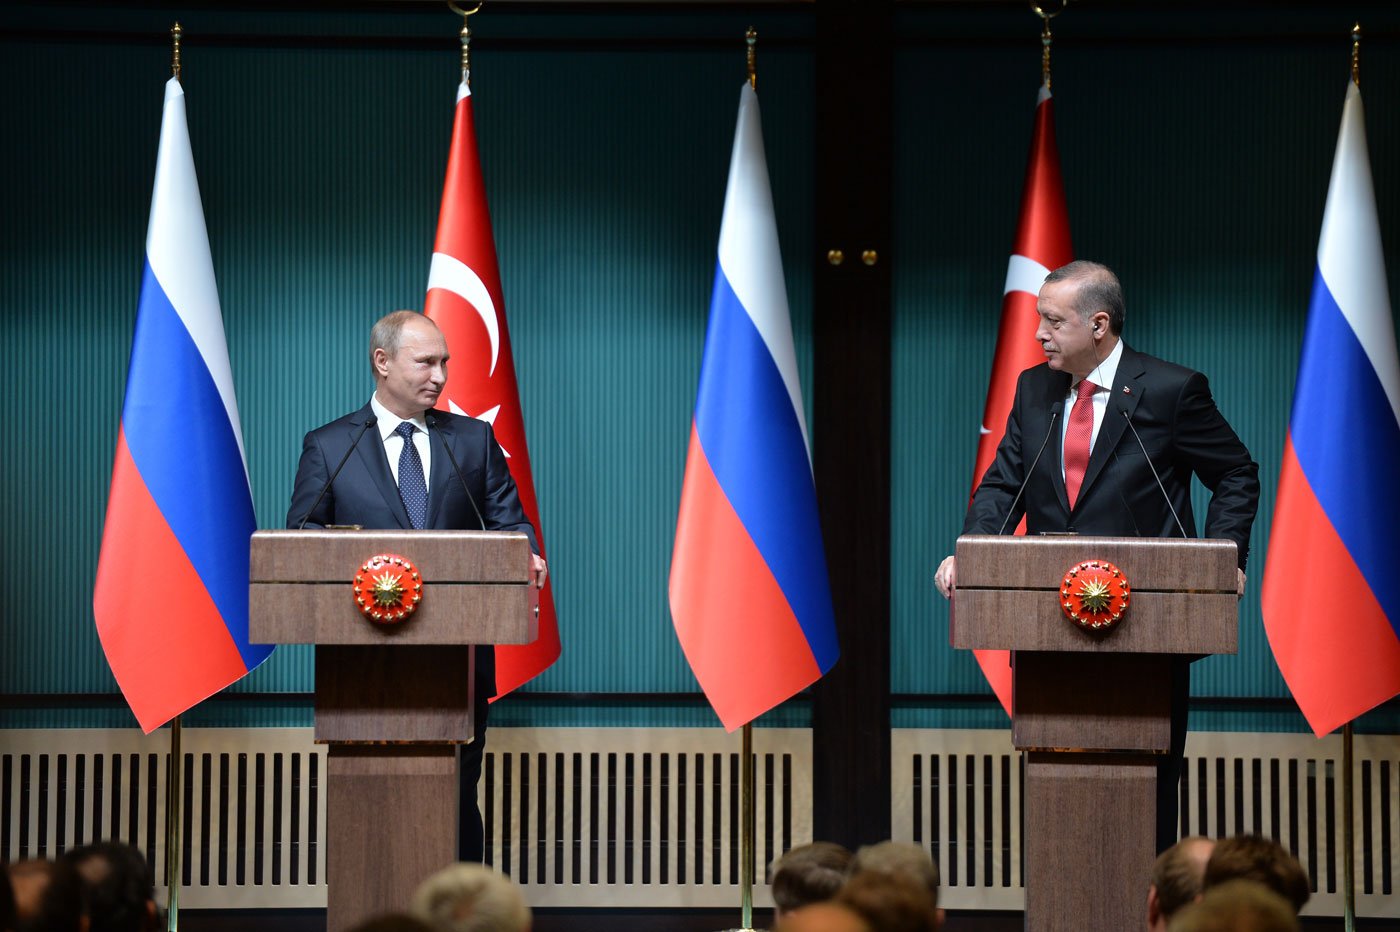 Саммит Россия-Турция отменен из-за крушения Су-24 в Сирии, - источник 